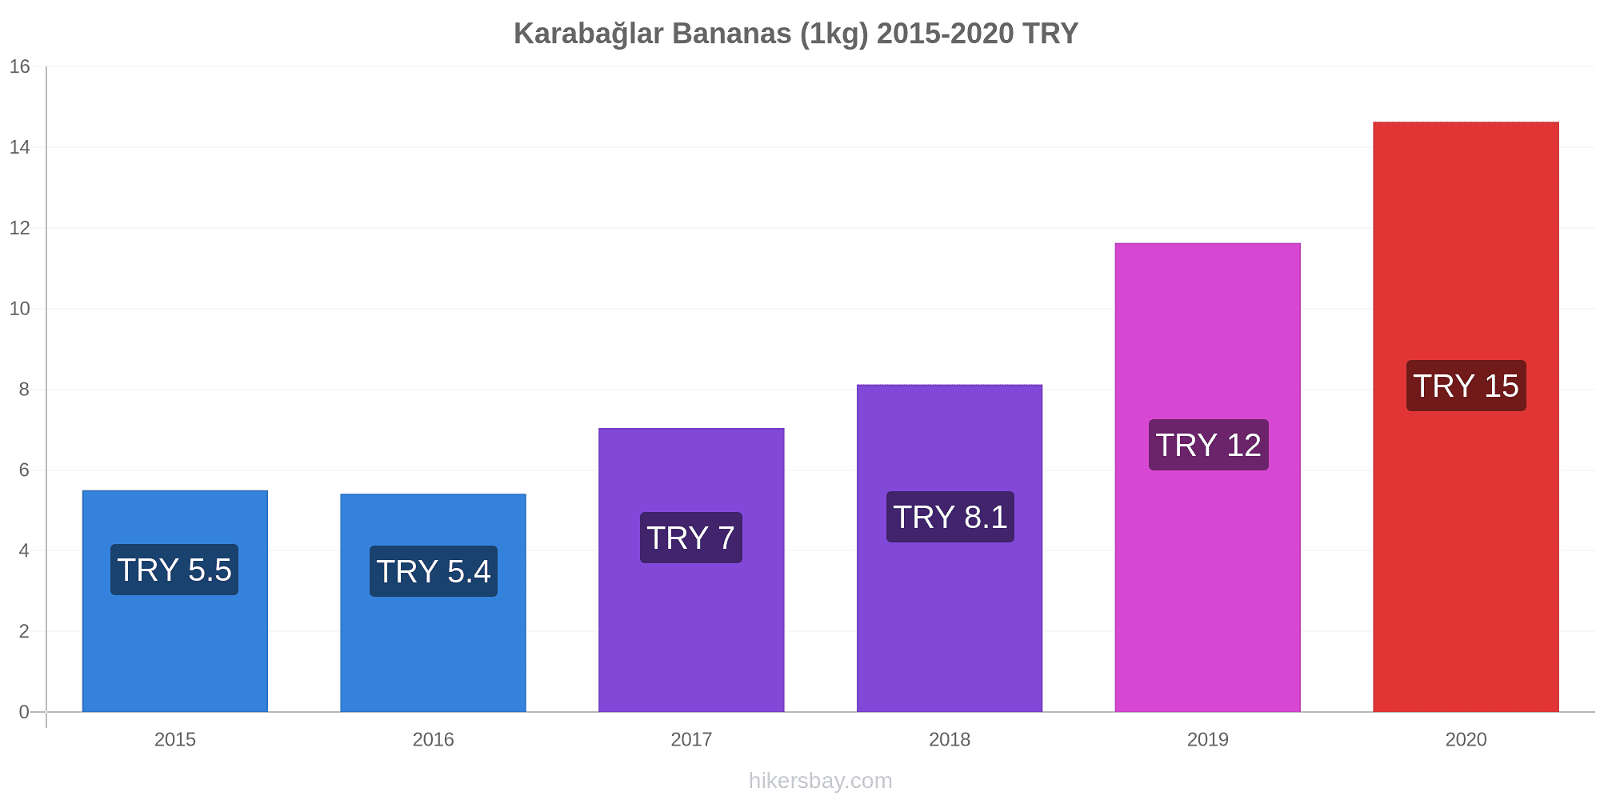 Karabağlar price changes Bananas (1kg) hikersbay.com